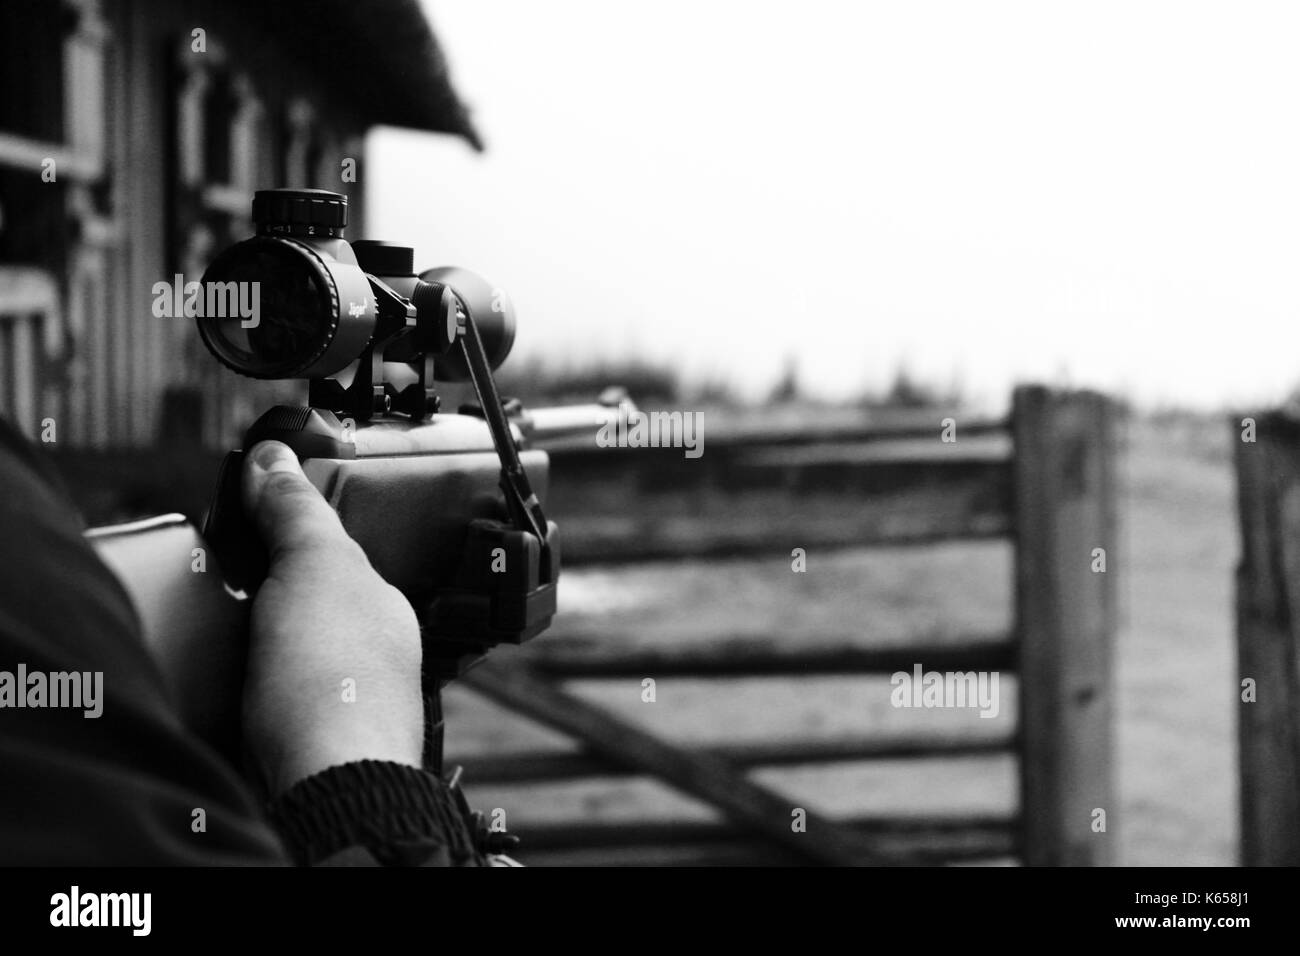 Airgun / air rifle shot on a mountain hut Stock Photo